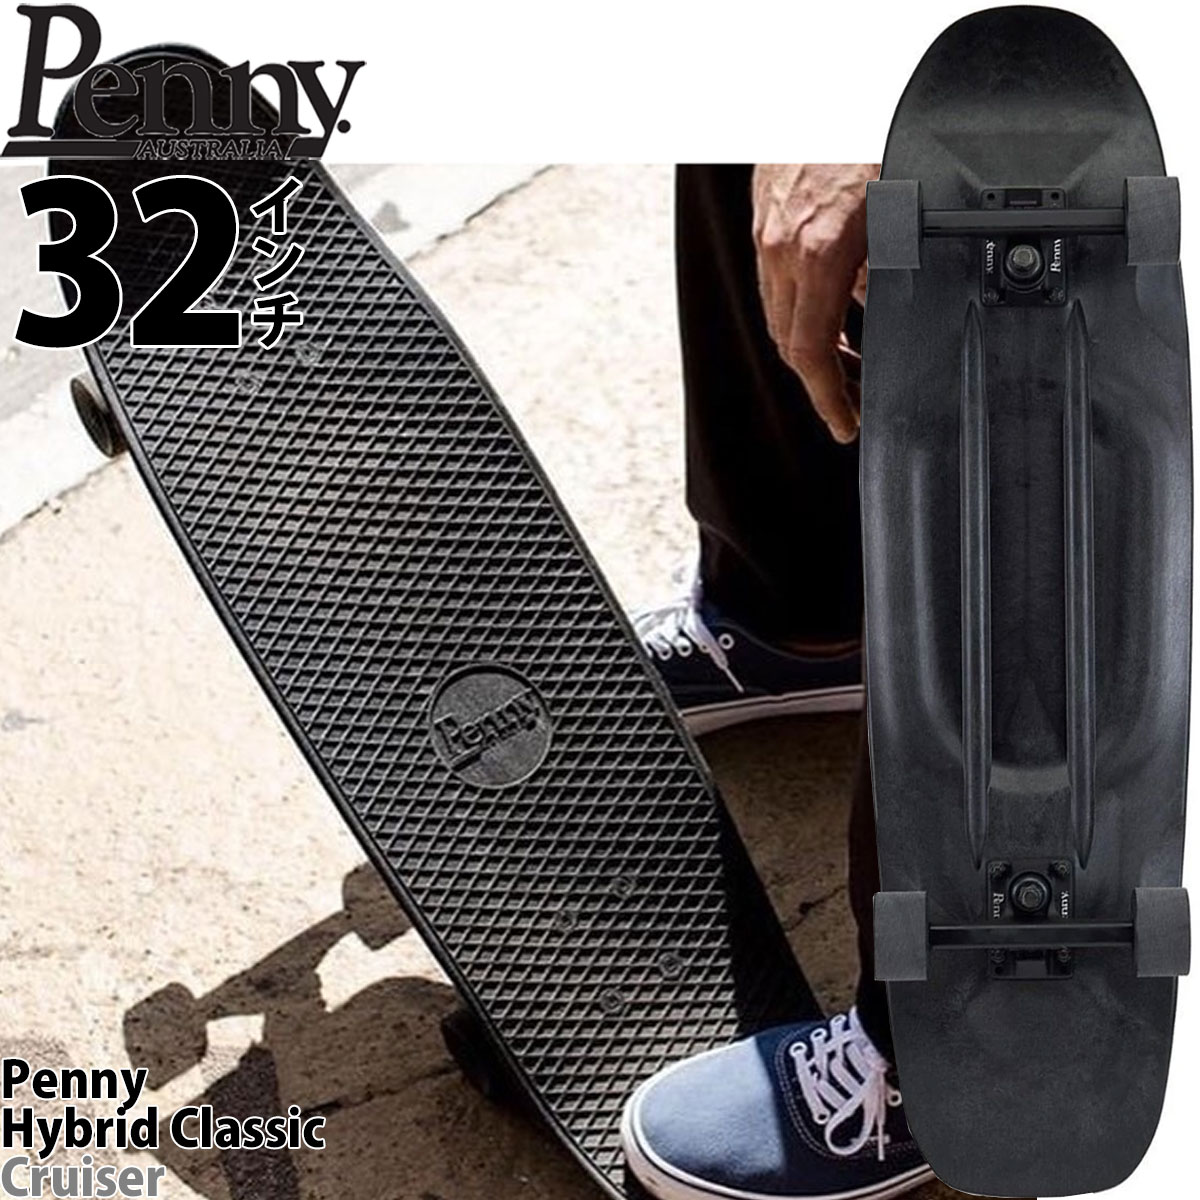 ペニー スケボー 32インチ ハイブリッドクルーザー Penny Skateboard Hybrid Classic Cruiser Black  Out スケートボード コンプリート クラシッククルーザー ブラックアウト スケートボードセット プラスチック 人気ブランド ペニースケボー  国内正規品